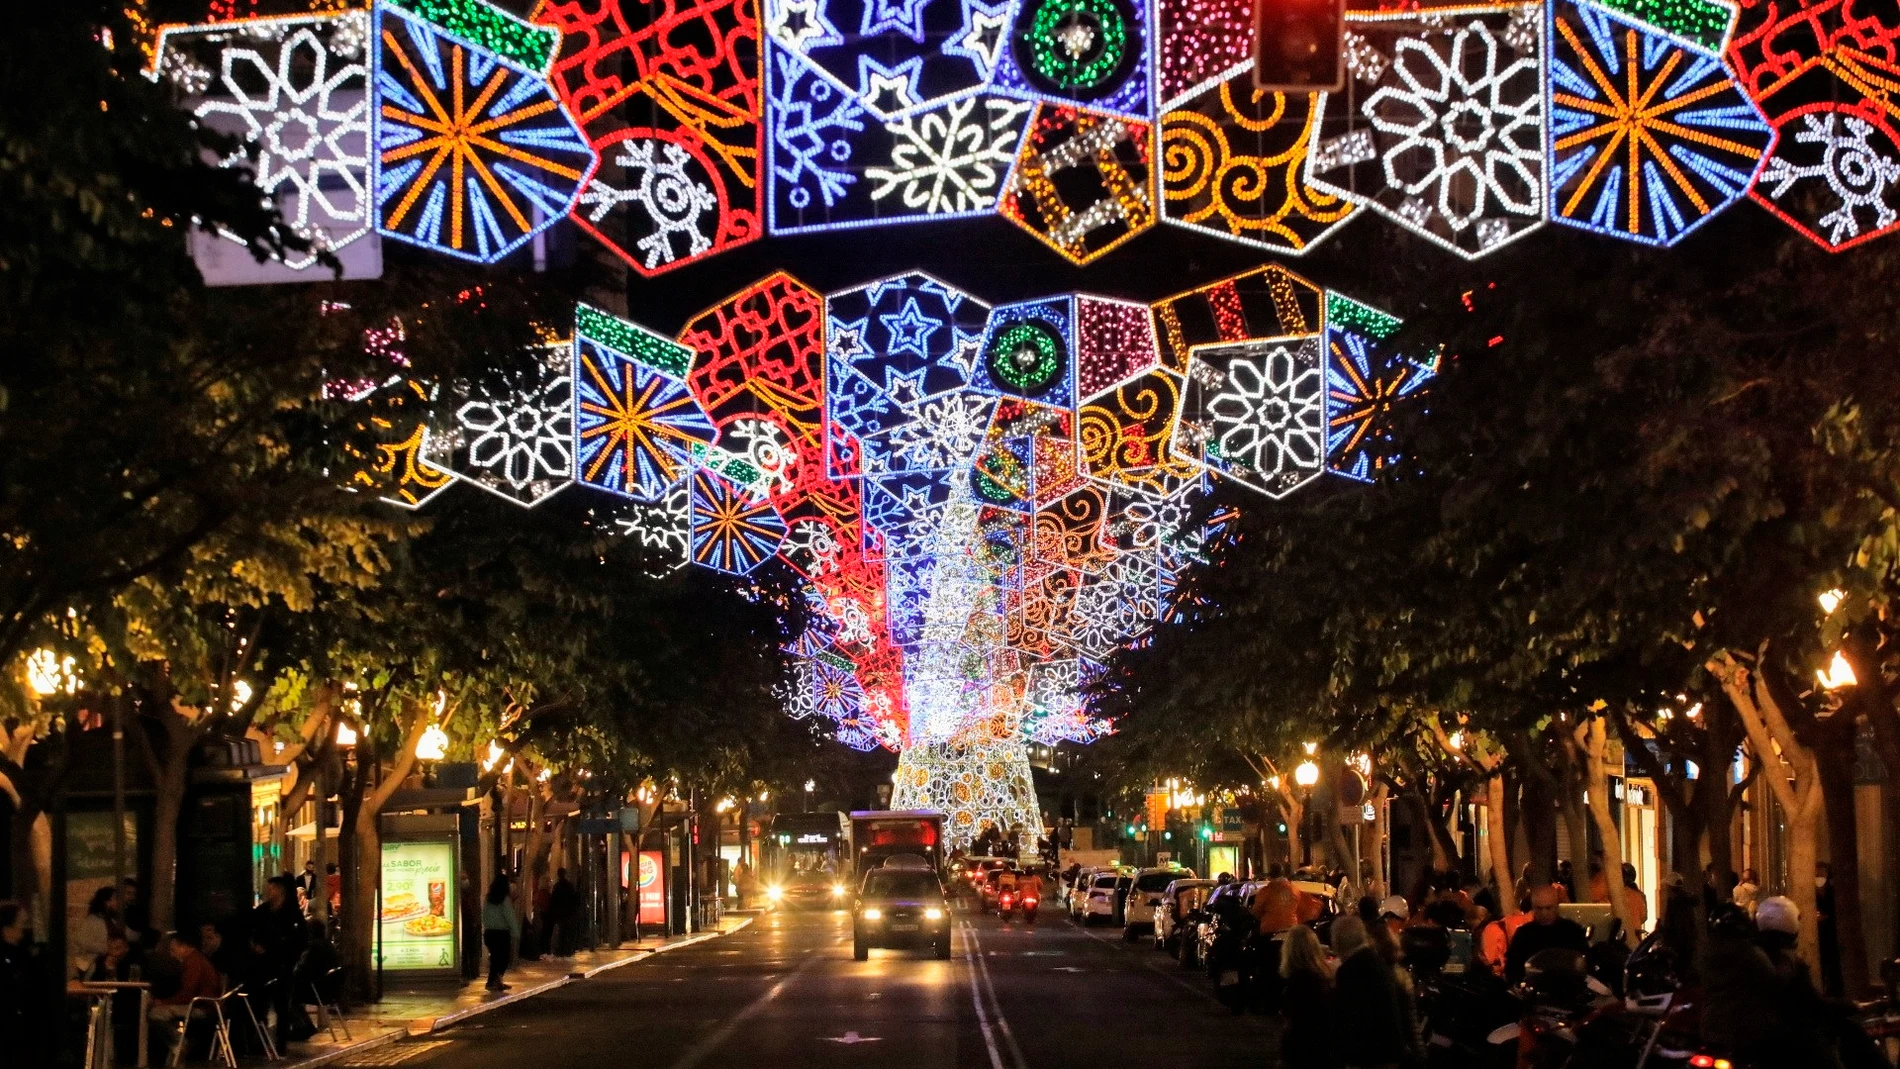 Luces de Navidad en Alicante, año 2020AYUNTAMIENTO DE ALICANTE05/11/2021